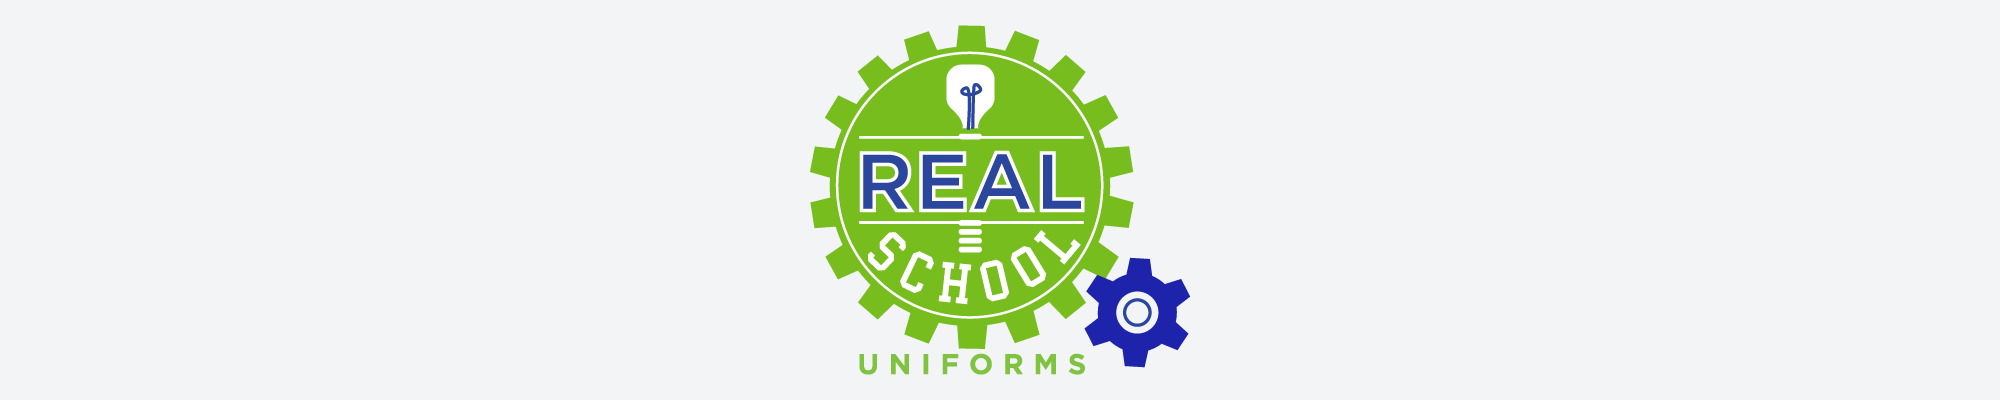 Real School Uniforms